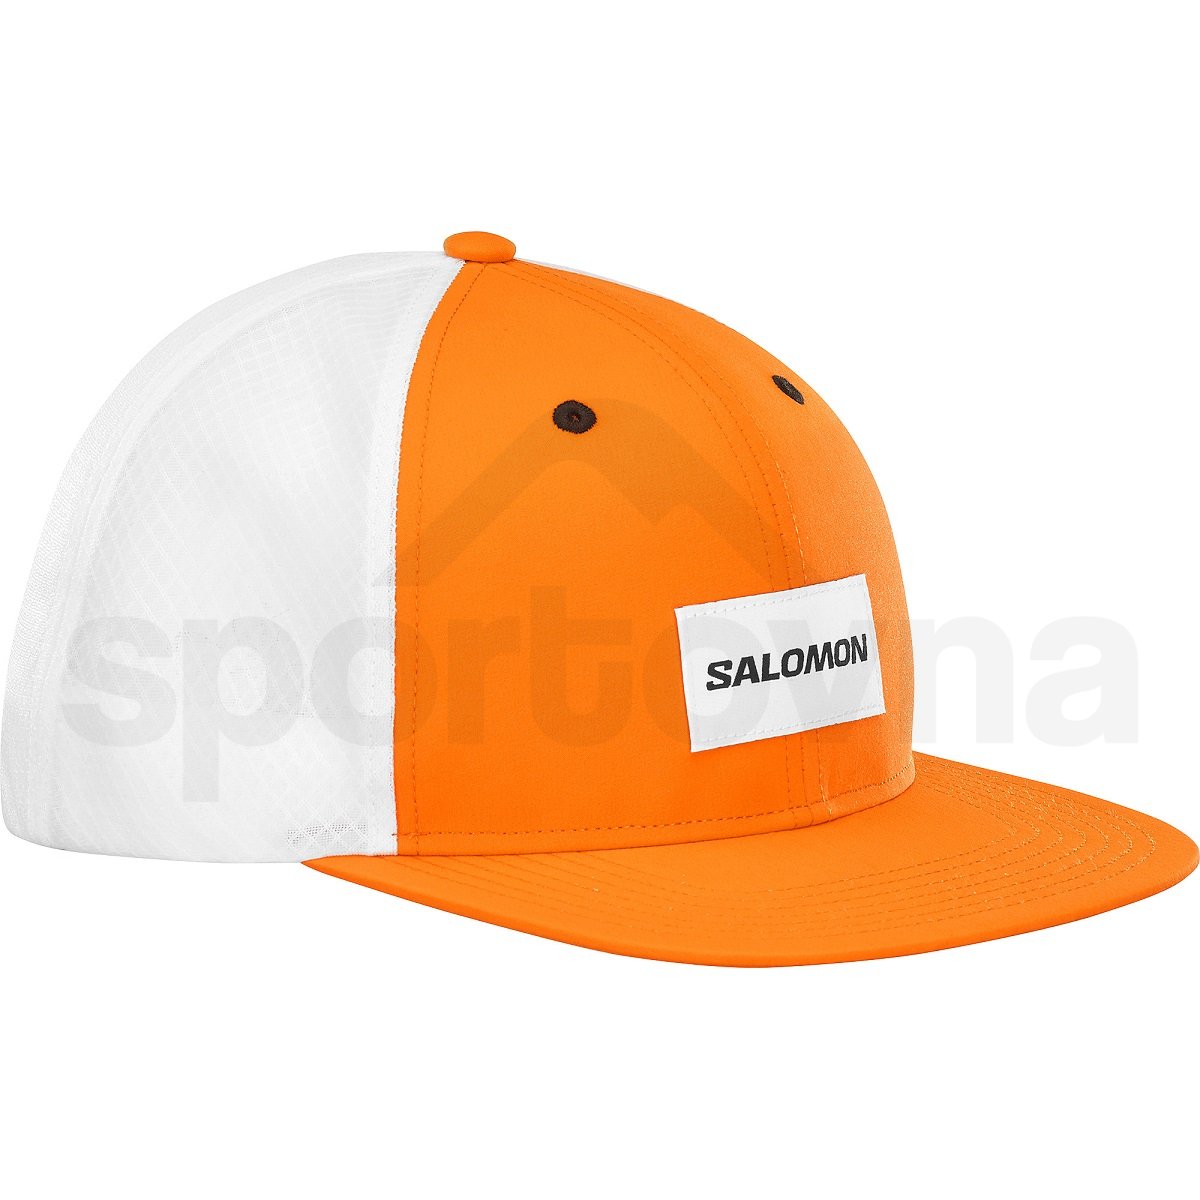 Kšiltovka Salomon Trucker Flat Cap - oranžová/bílá